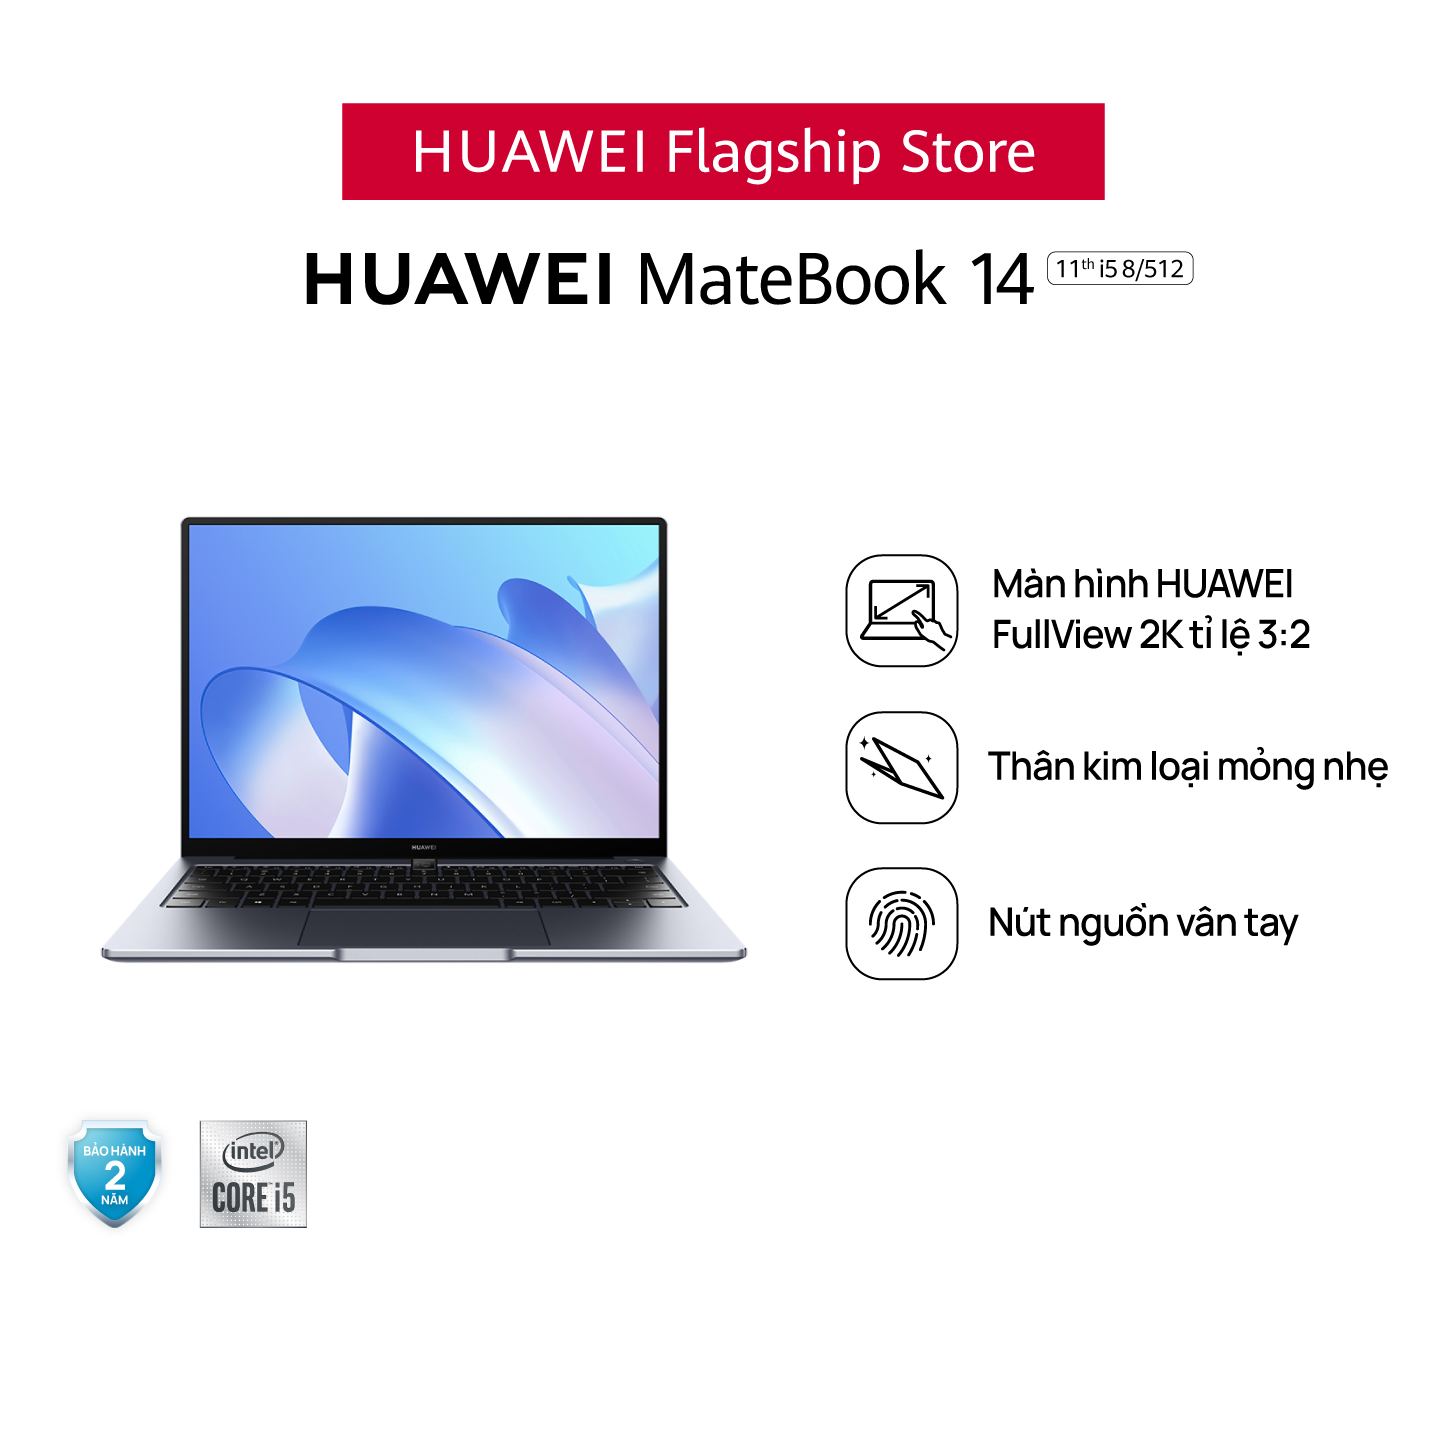 Máy Tính Xách Tay HUAWEI MateBook 14 (8GB/512GB) | Intel Core Thế Hệ Thứ 11 | Màn Hình HUAWEI 3:2 Fullview 2k | Nút Nguồn Vân Tay | Hàng Chính Hãng